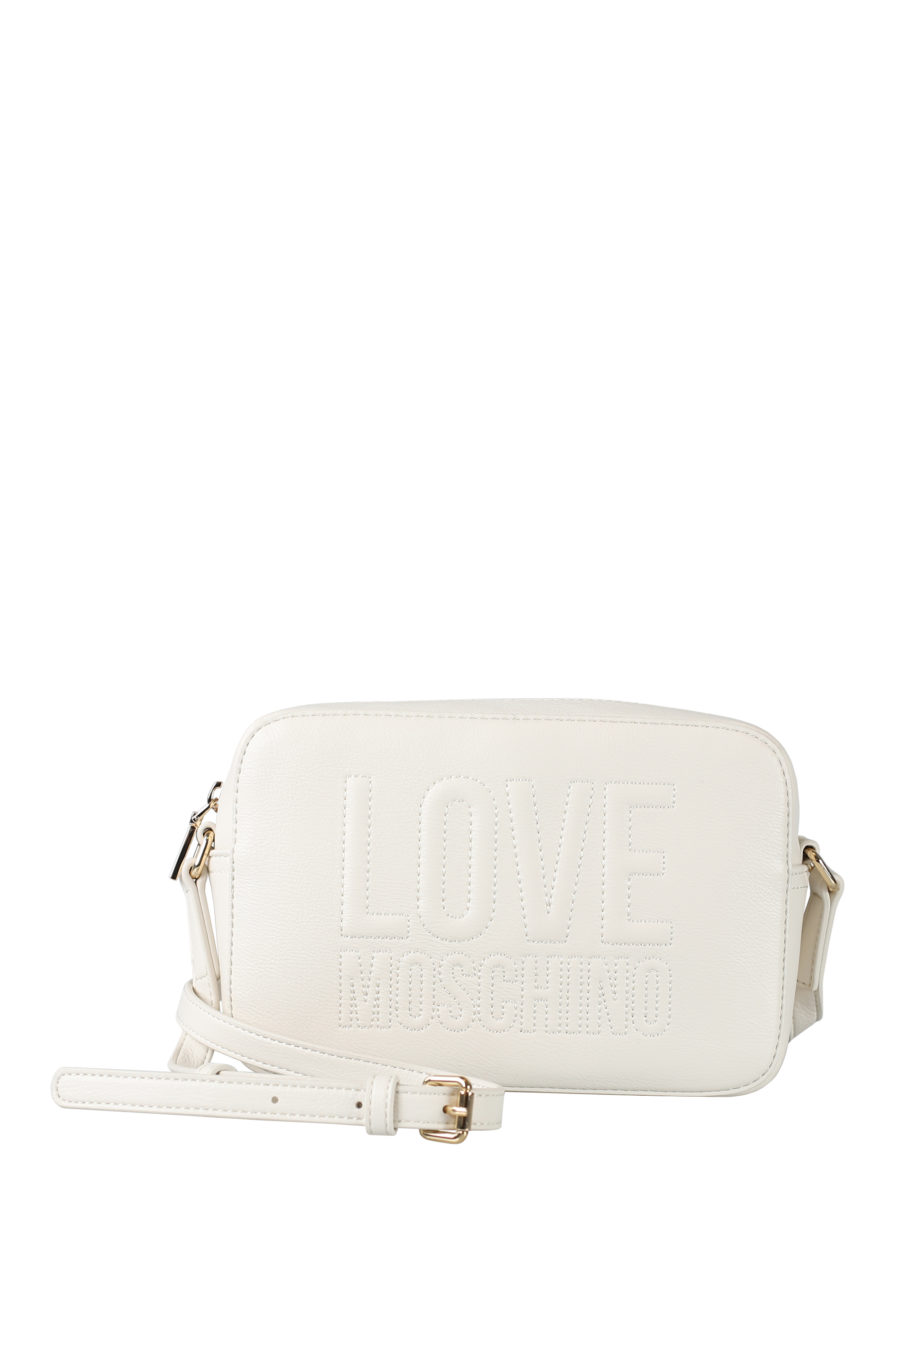 Bolso blanco "camera bag" con logo bordado - IMG 1548